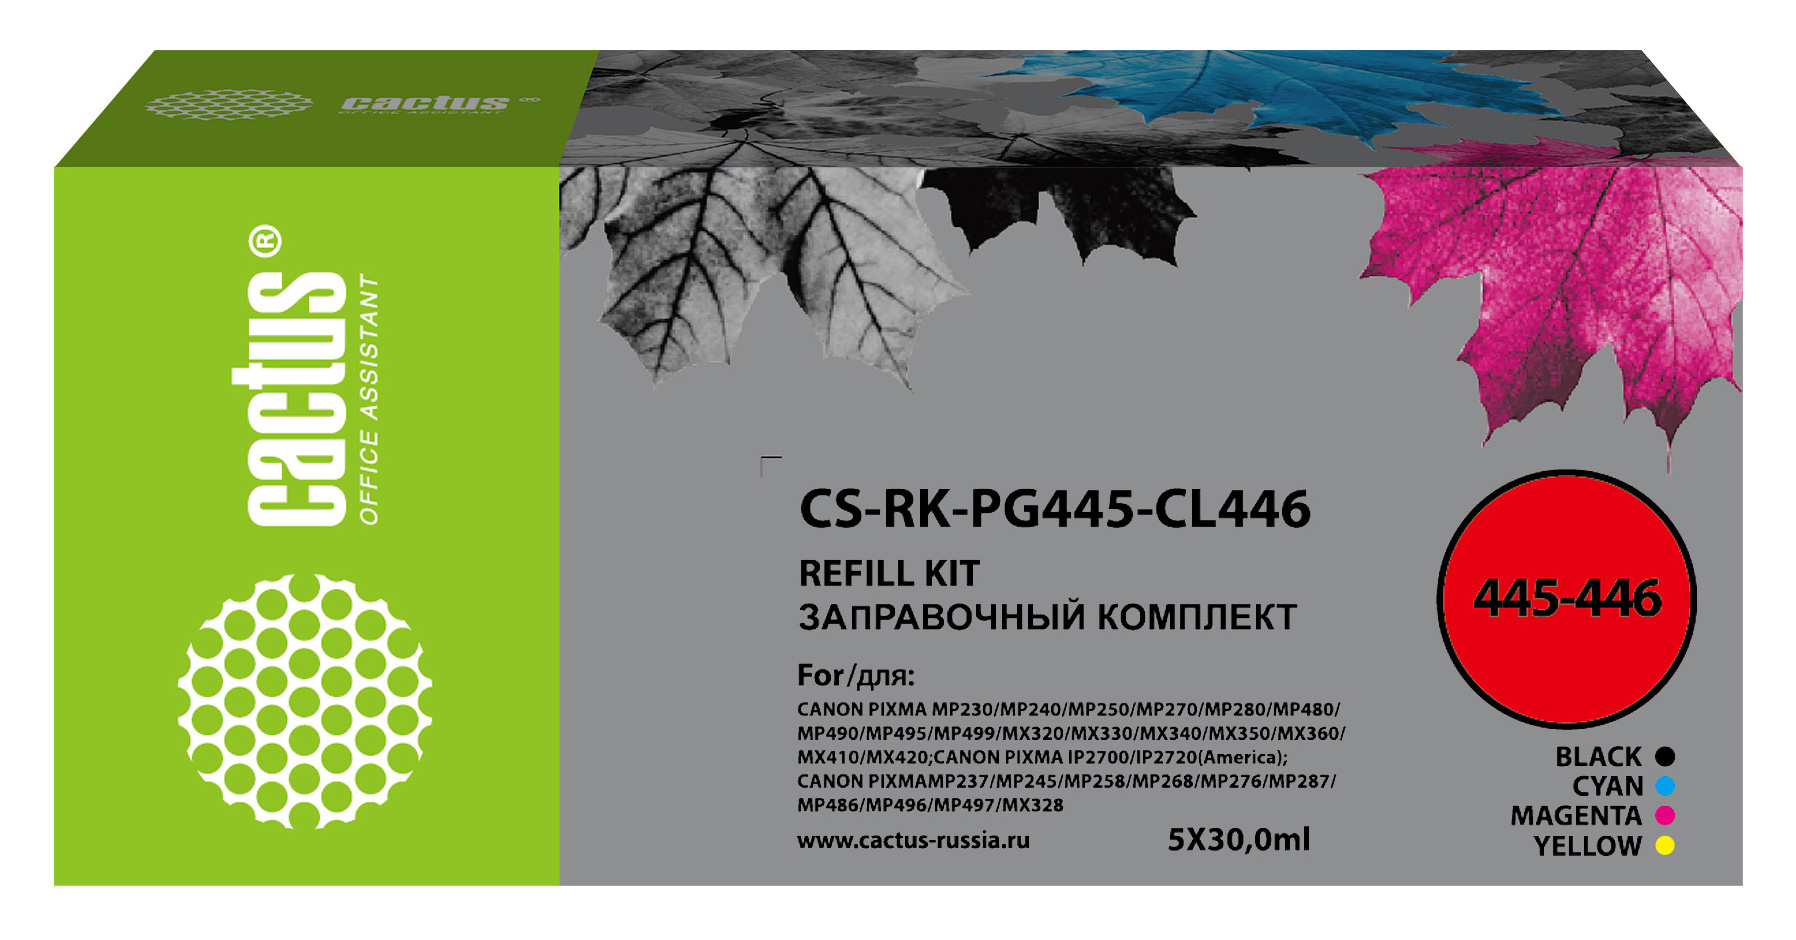 Заправочные наборы Заправочный набор струйный Cactus CS-RK-PG445-CL446, 5x30 мл, голубой/ пурпурный/ желтый/ черный для Canon Pixma MG2440/MG2540 совместимый